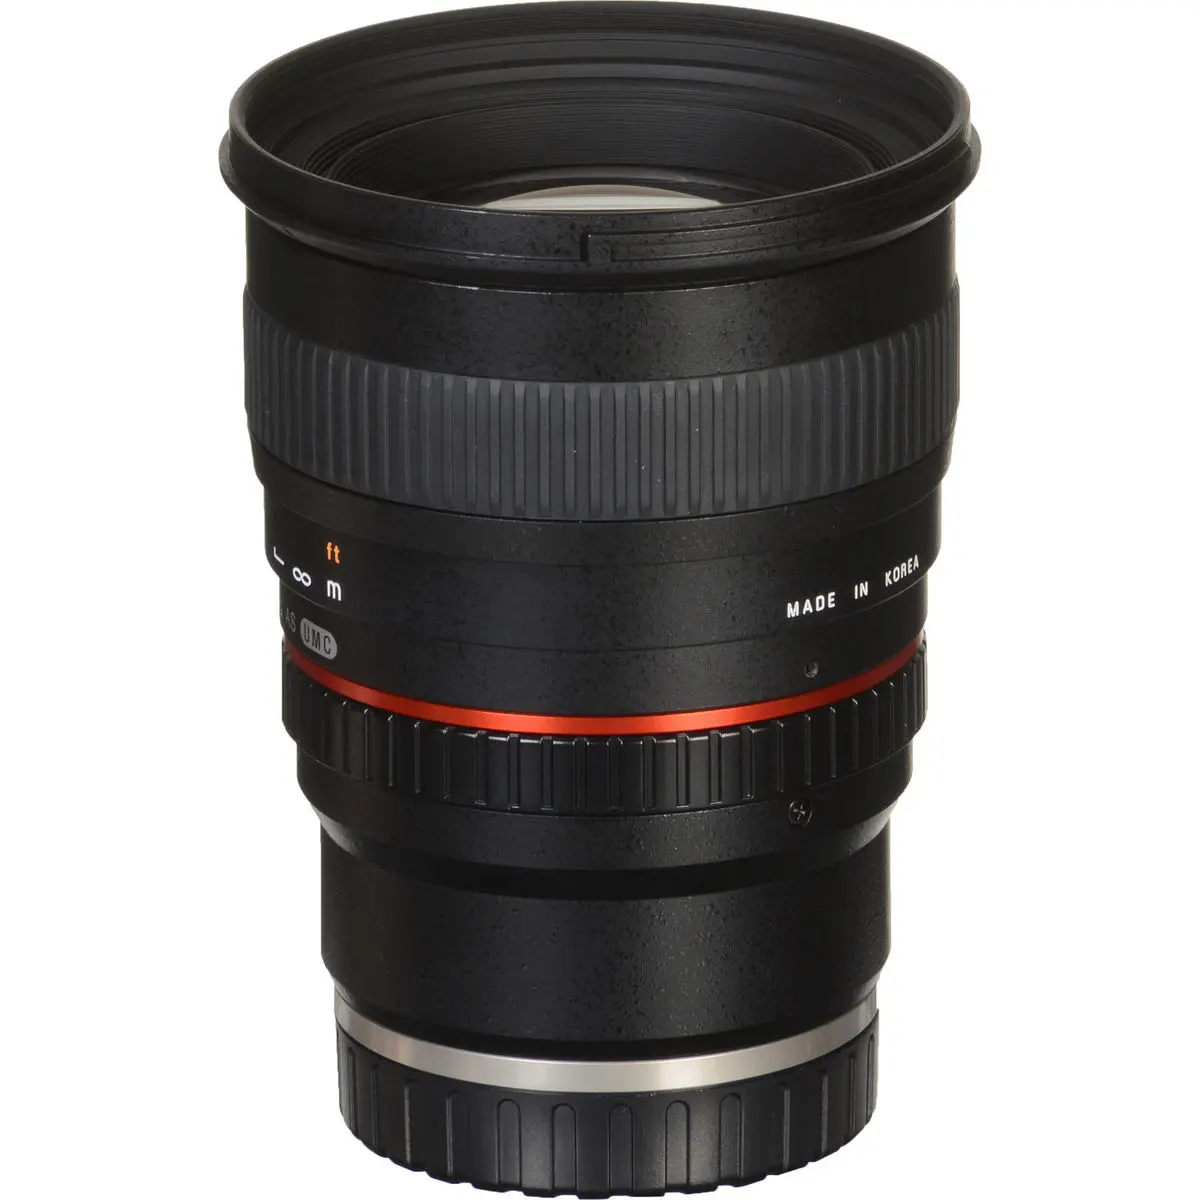 10. Samyang 50 mm f/1.4 AS UMC (Sony E) Lens